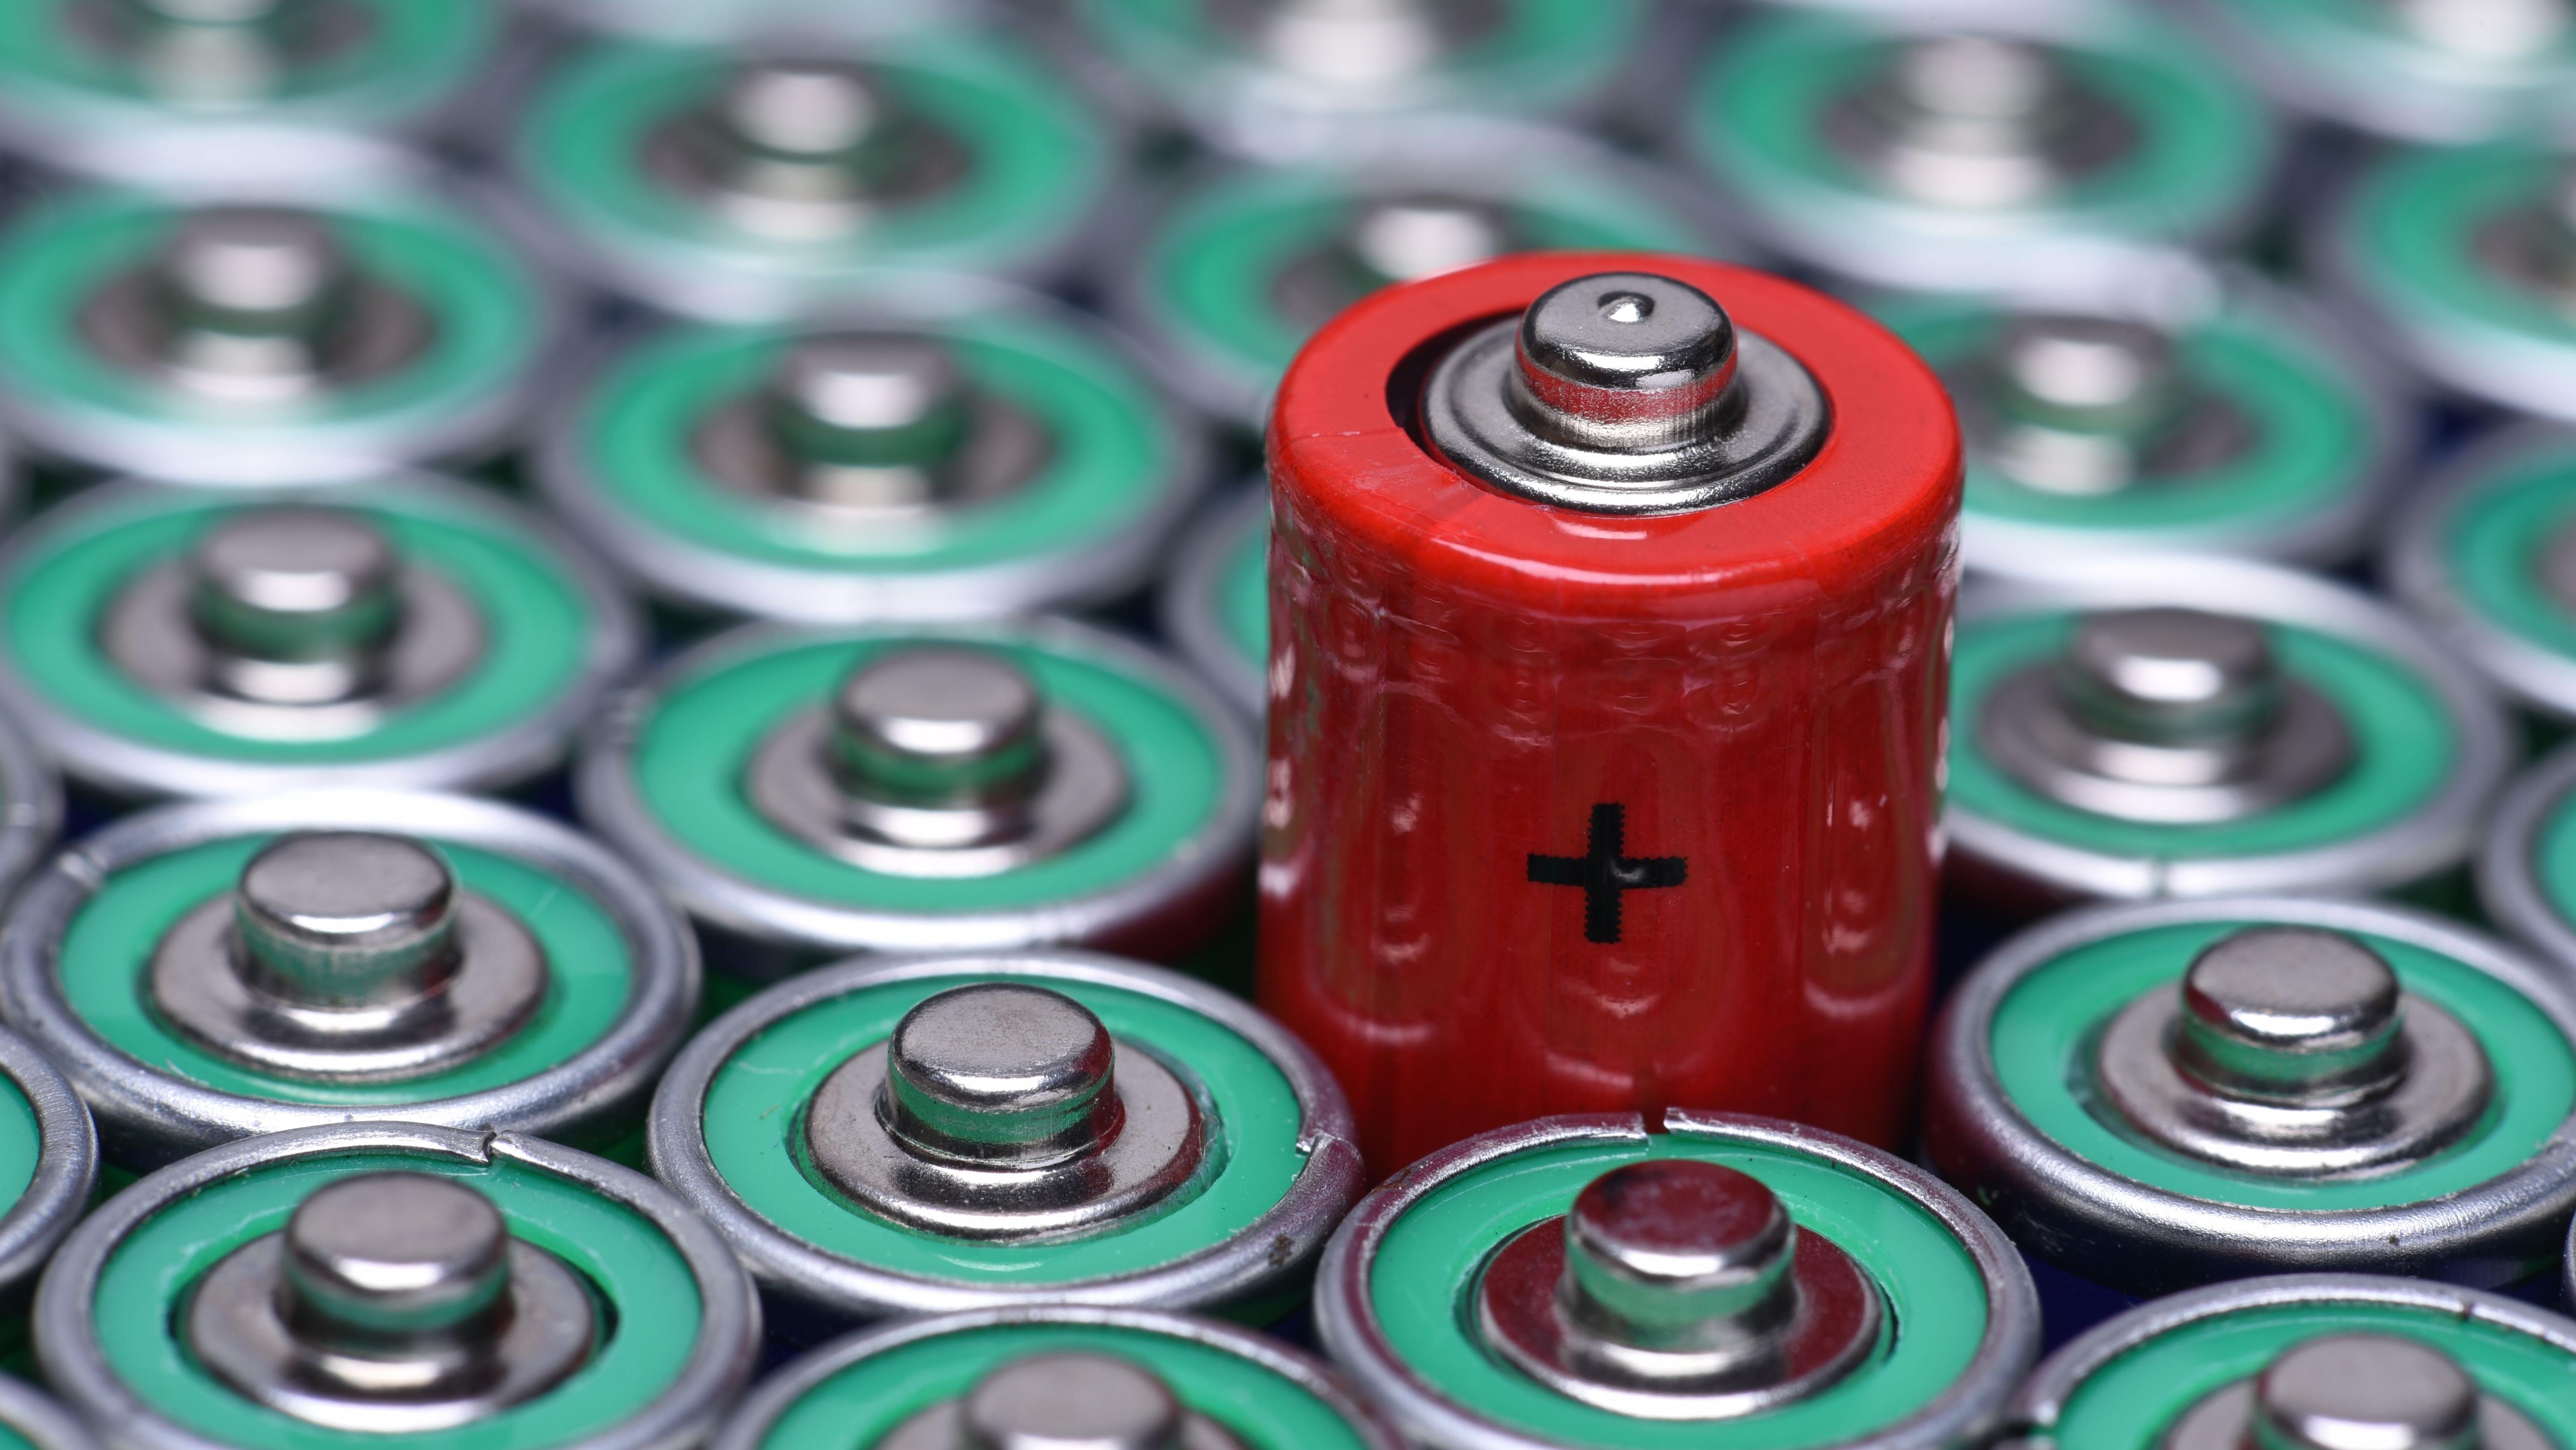 Jednorazowe czy wielokrotnego użytku? Które baterie warto kupić?